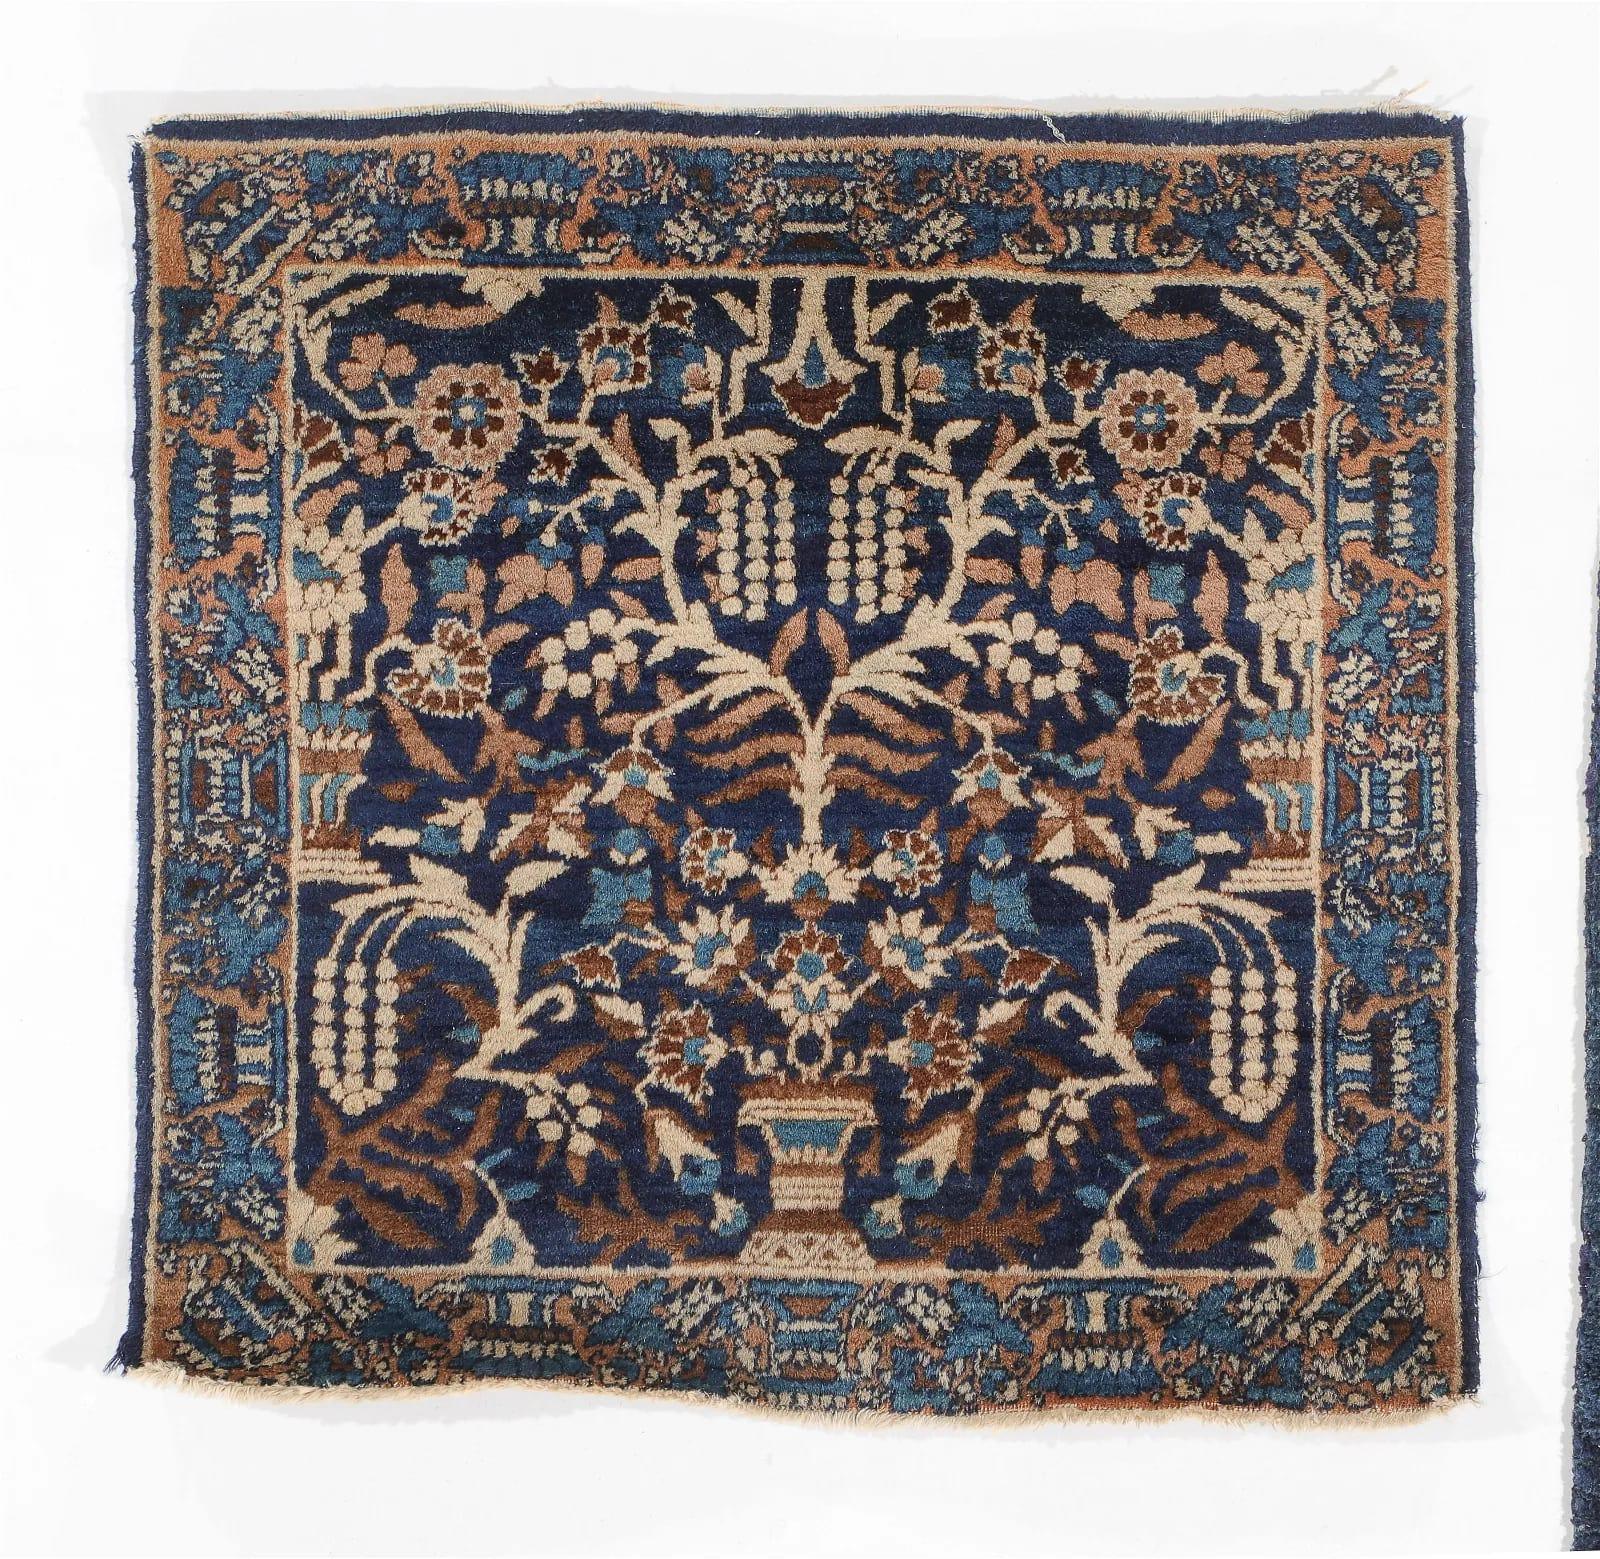 Rehaussez votre espace avec le charme intemporel et l'artisanat exquis de ces deux petits tapis anciens Yazd & Sarouk, originaires de Perse. Cette paire de tapis de collection se compose de deux pièces distinctes, chacune mettant en valeur la beauté